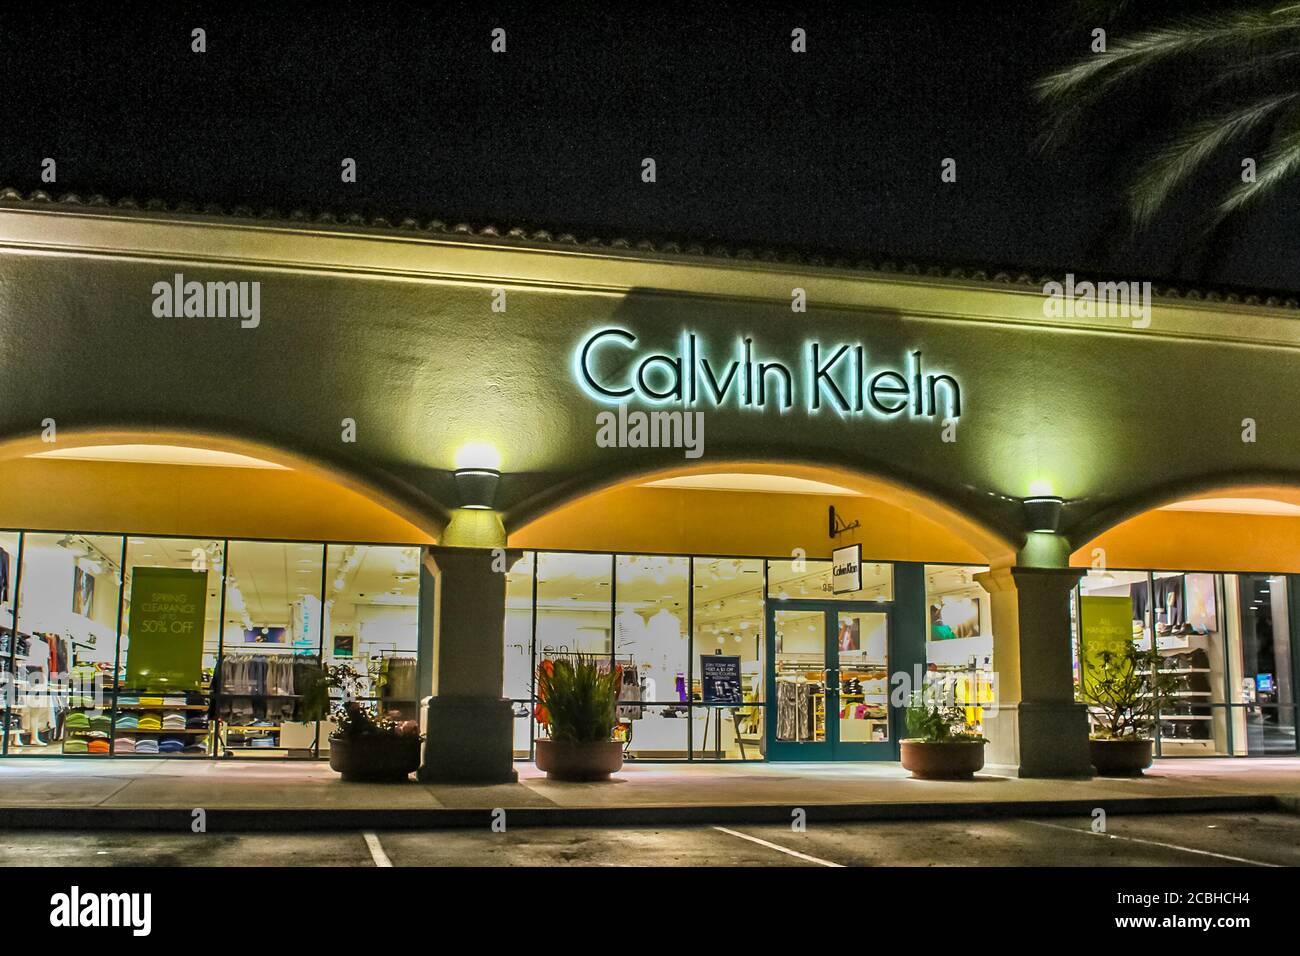 Calvin Klein outlet store in Camarillo California Stock Photo - Alamy